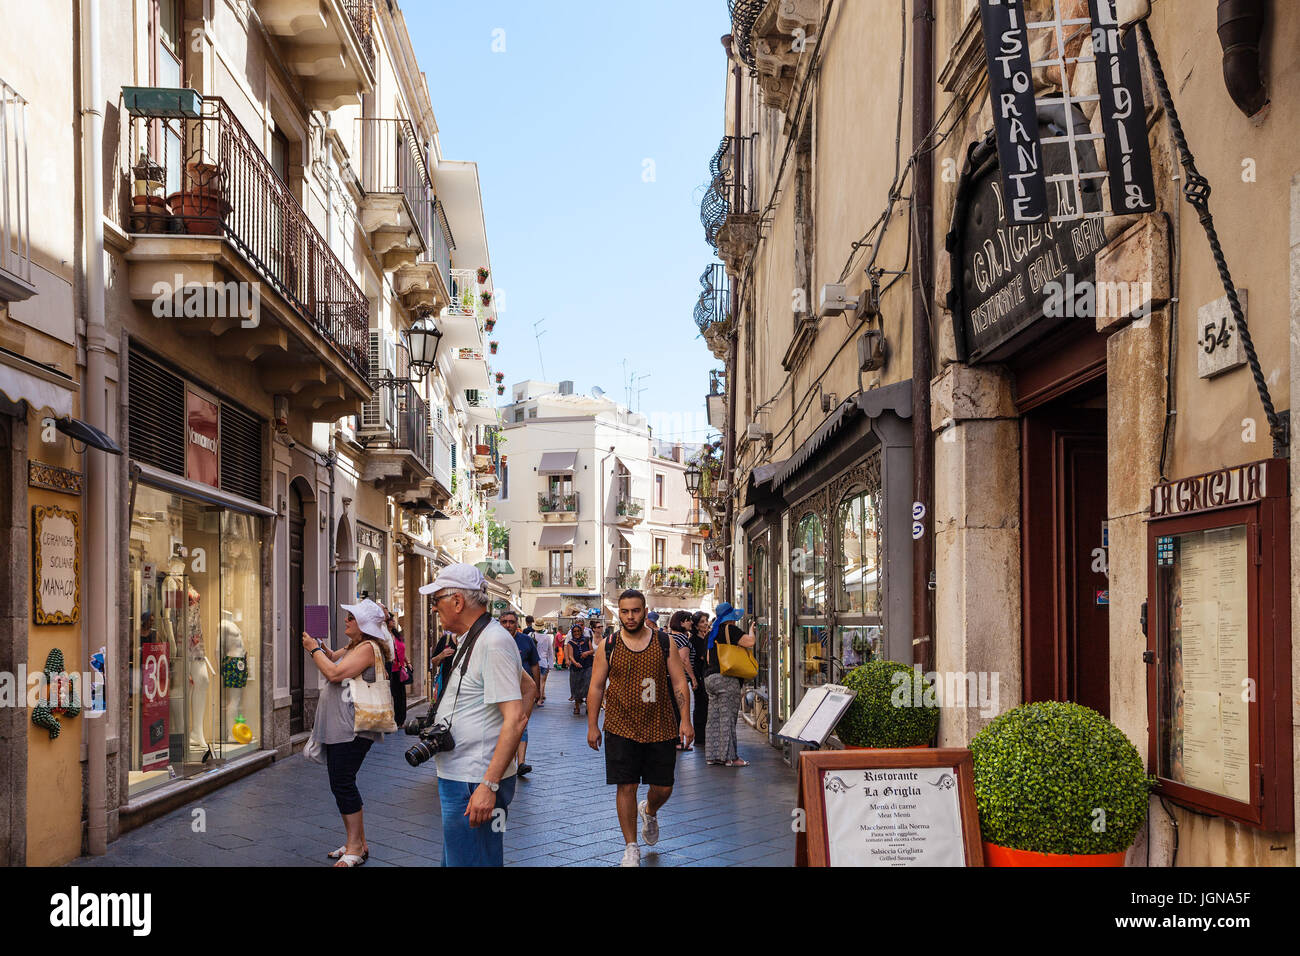 TAORMINA, Italia - Junio 29, 2017: los turistas en la calle principal, Corso Umberto I en la ciudad de Taormina. Taormina es ciudad resort en el Mar Jónico, en Sicilia Foto de stock